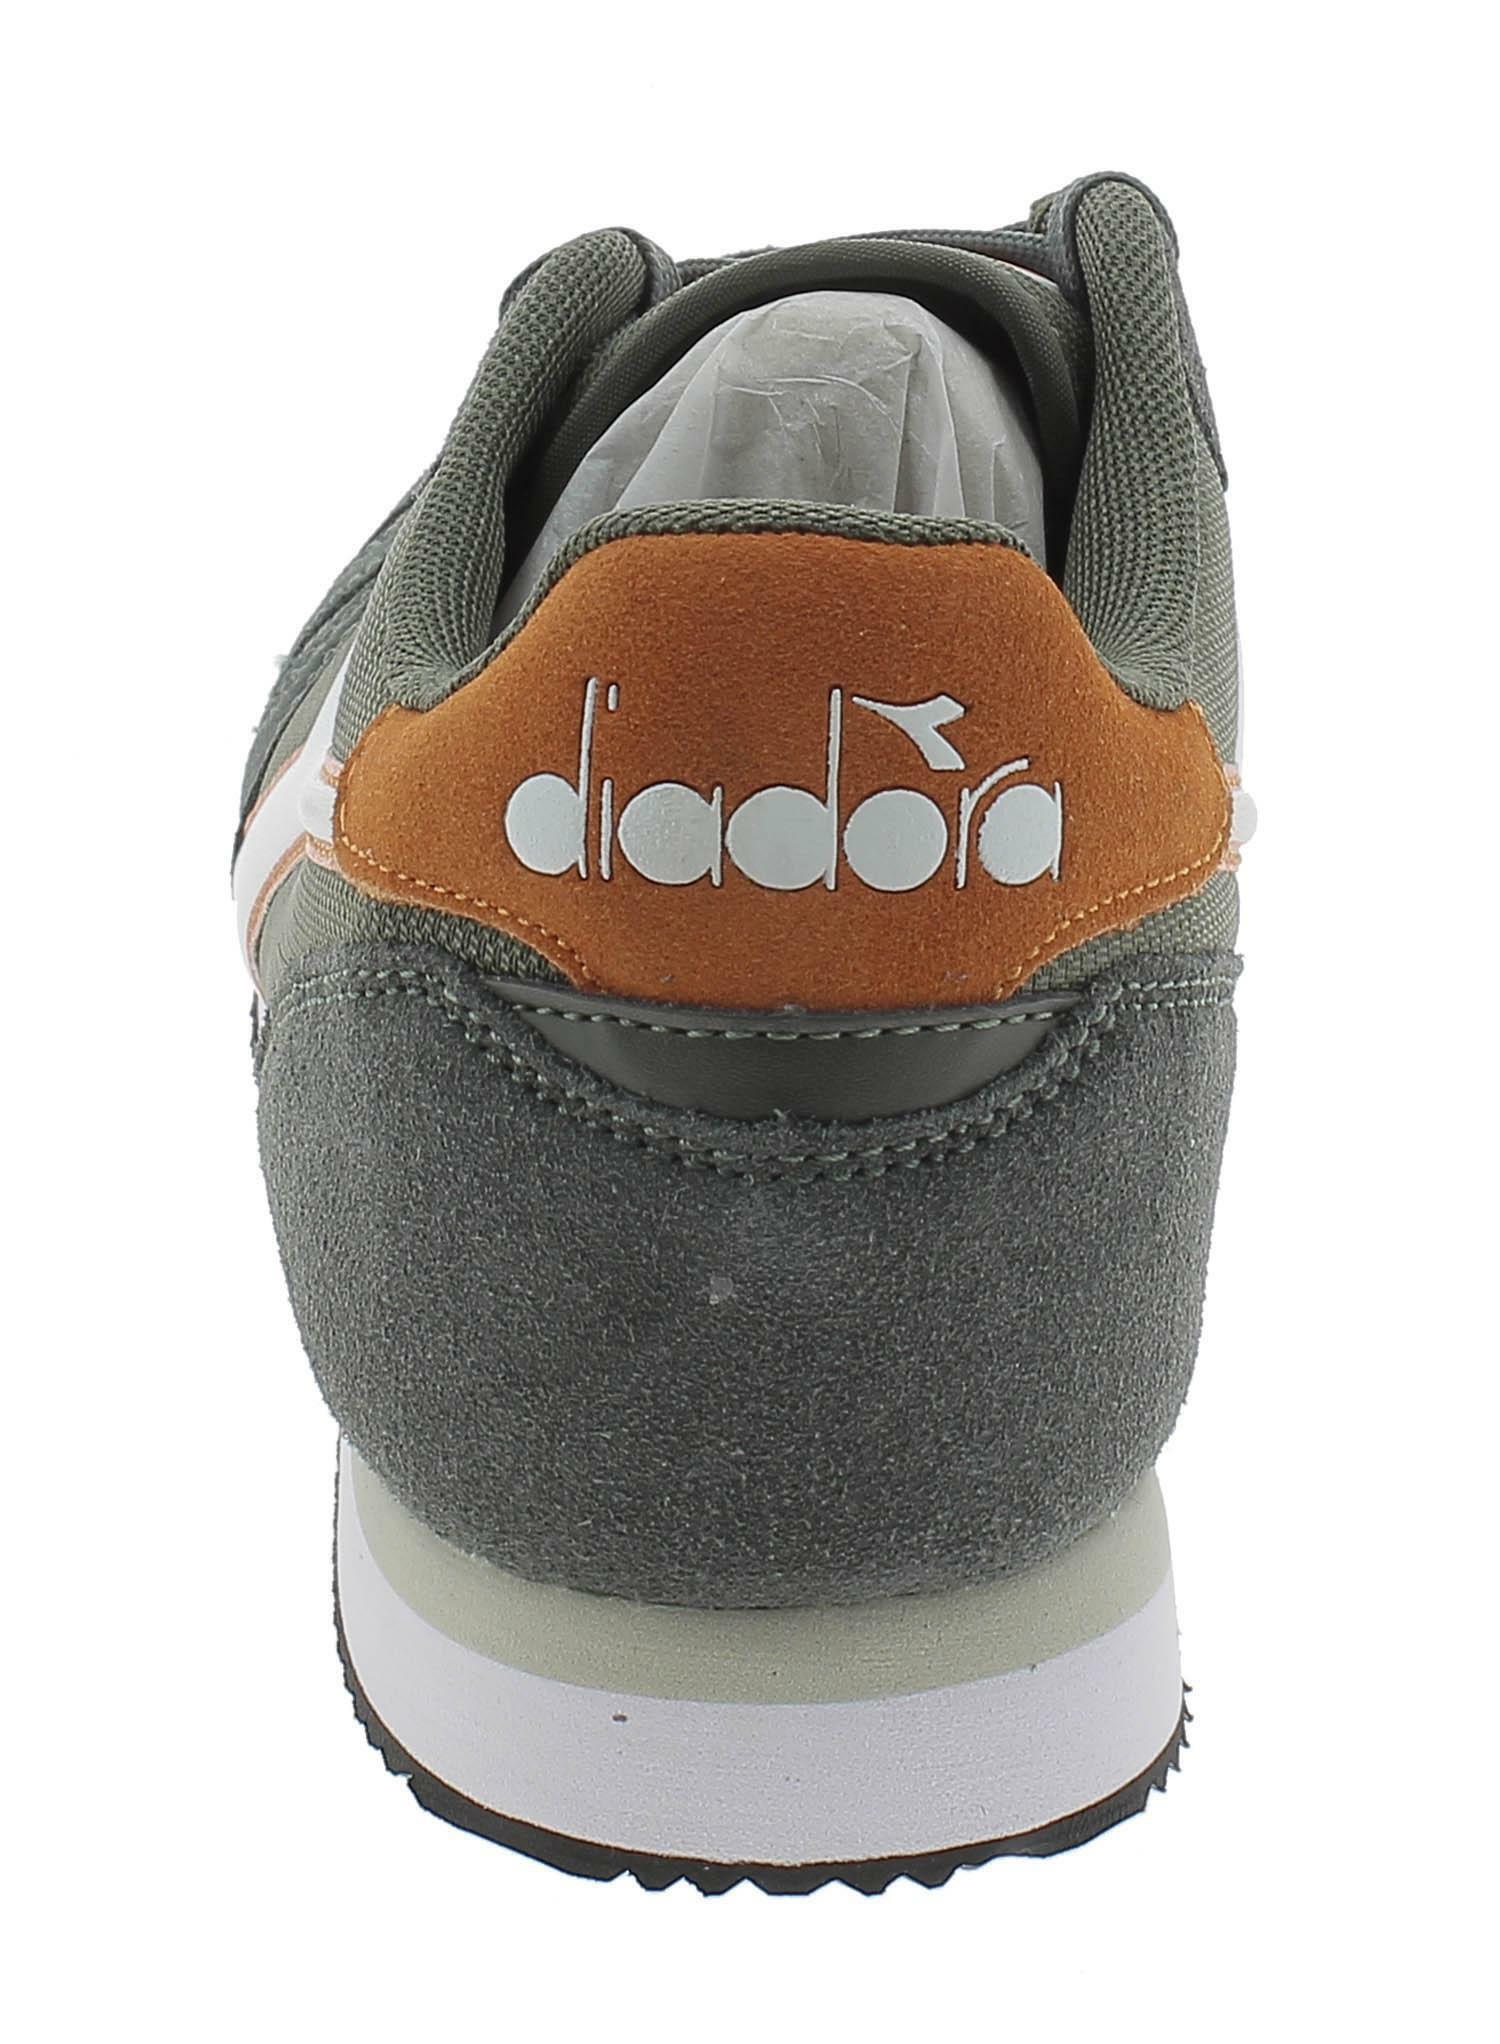 diadora diadora simple run scarpe sportive uomo verdi 173745c8893